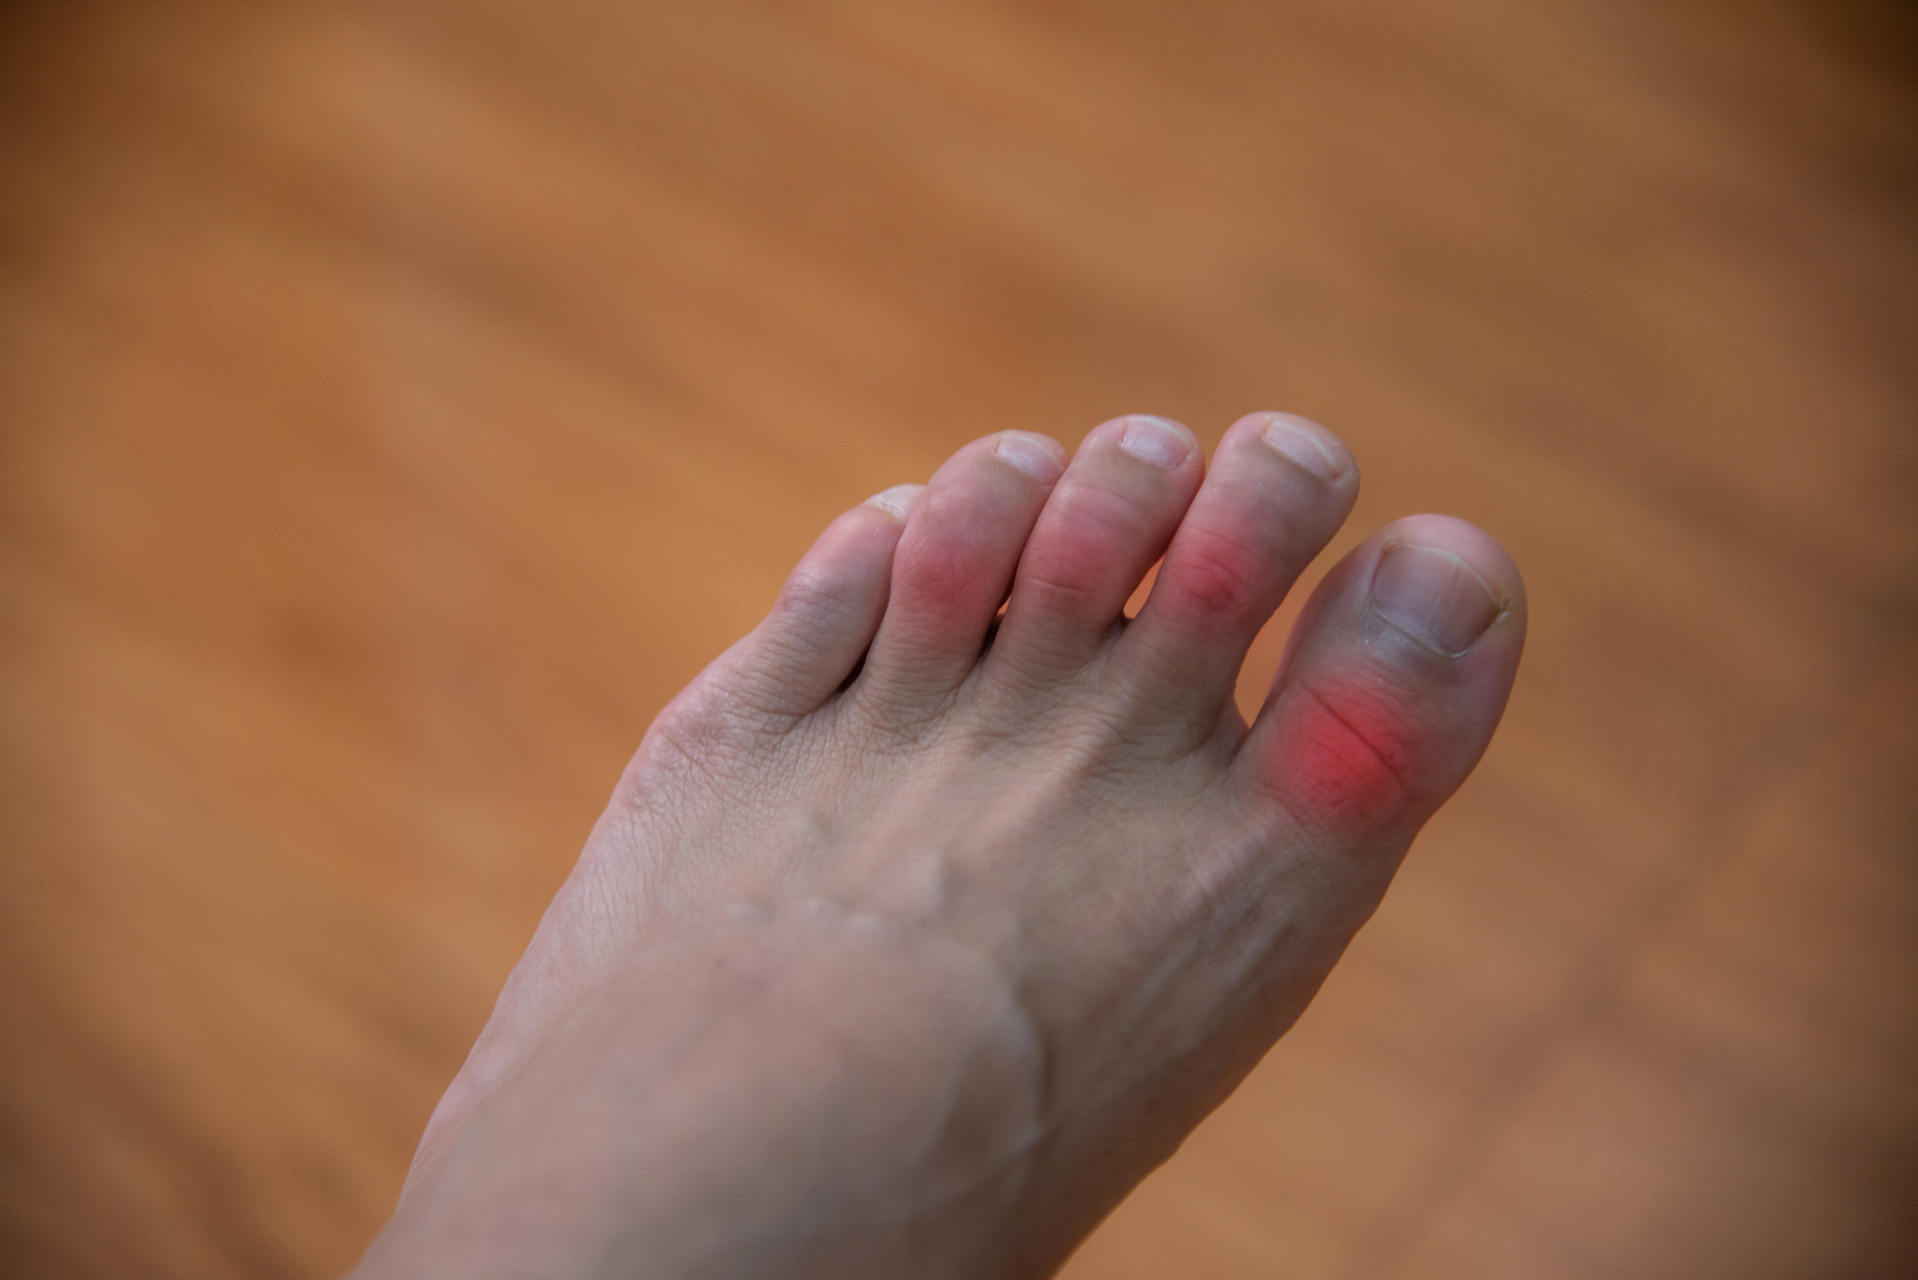 脚拇指疼痛是一个常见的征兆,可能表明身体出现某些问题